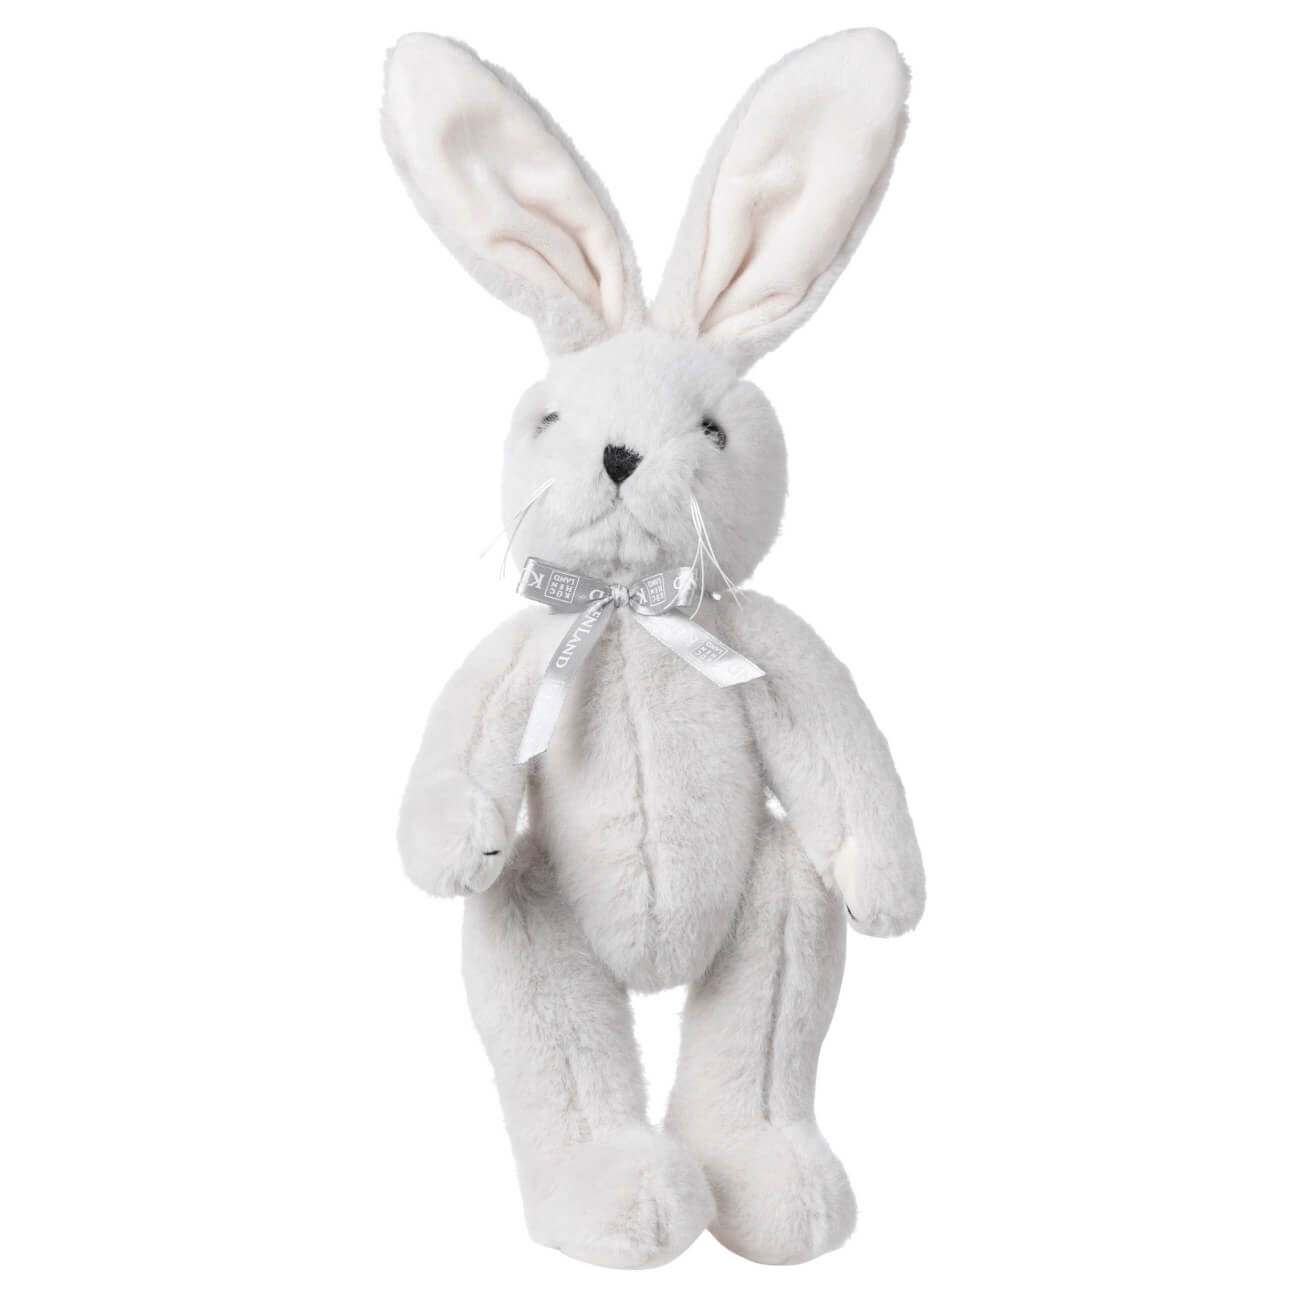 Игрушка, 30 см, мягкая, с подвижными лапами, полиэстер, светло-серая, Кролик, Rabbit toy мягкая игрушка басик в полосатом свитере 19 см